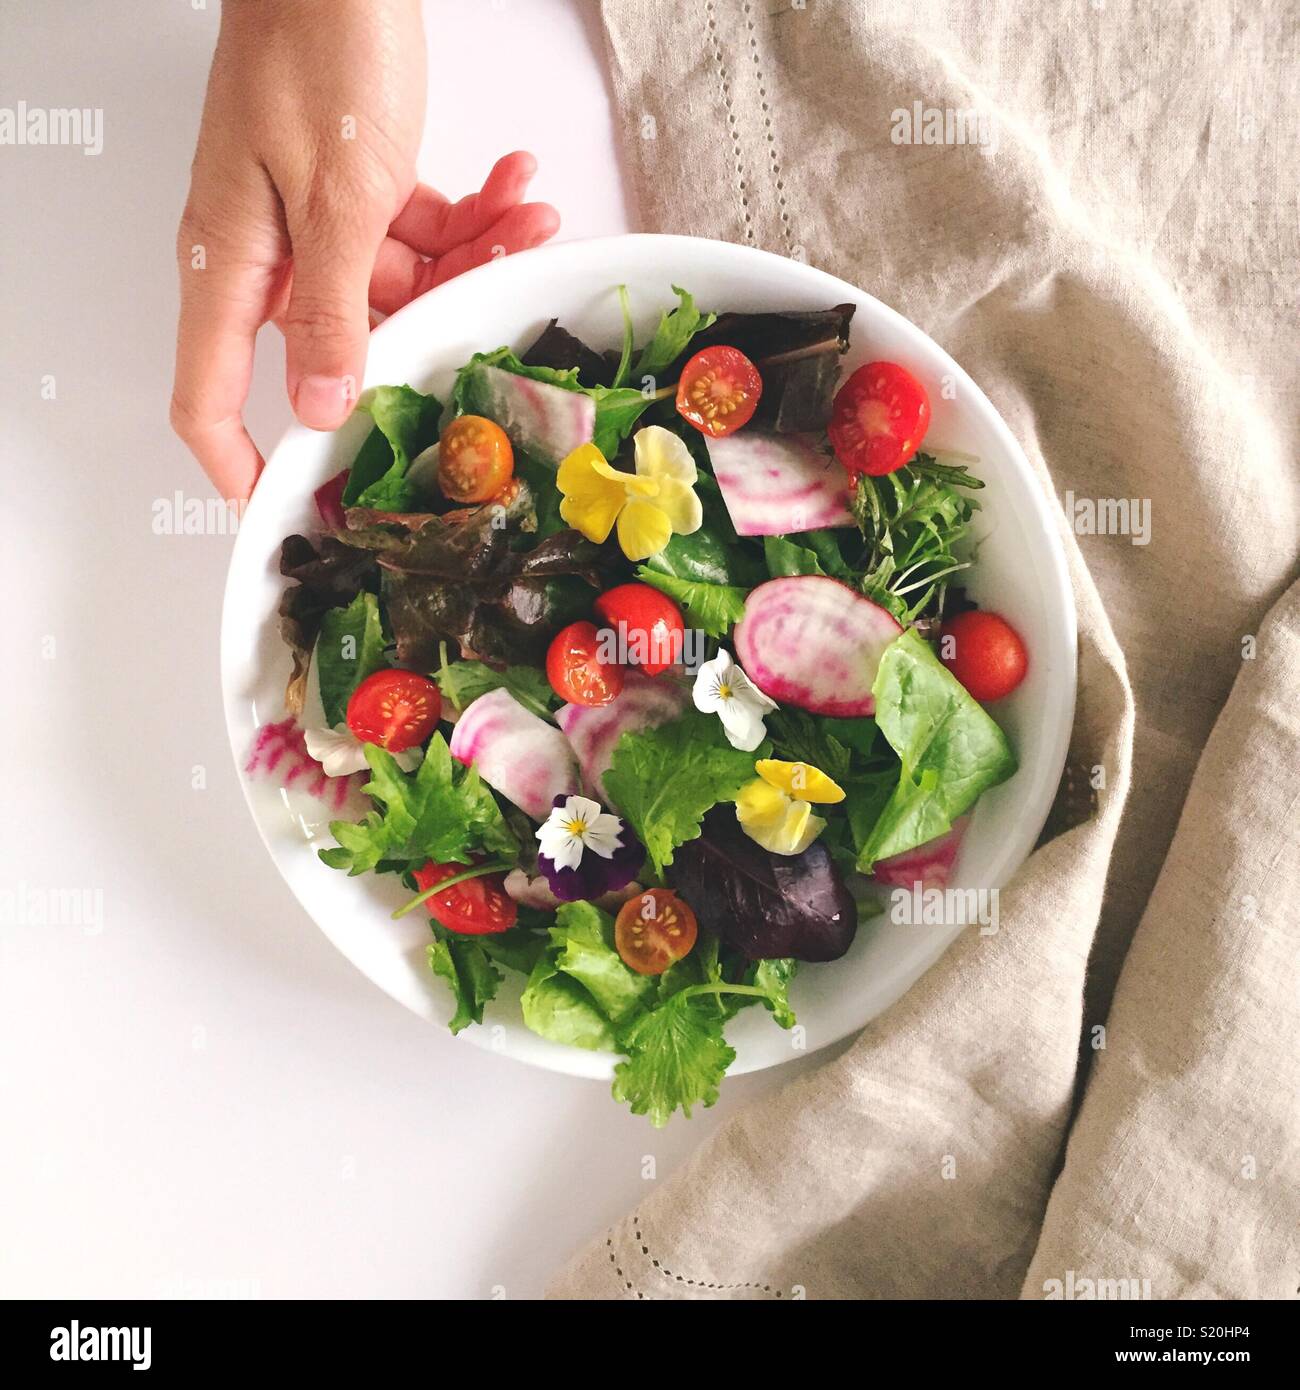 Organische Blume Salat. Essbare Blüten in einem Salat Farbe und Textur auf eine langweilige Salat geben. Ein Fest für die Augen als auch Ihren Magen. Die Grüns und Blumen Essen. Wunderbare vegetarische Mahlzeit. Stockfoto